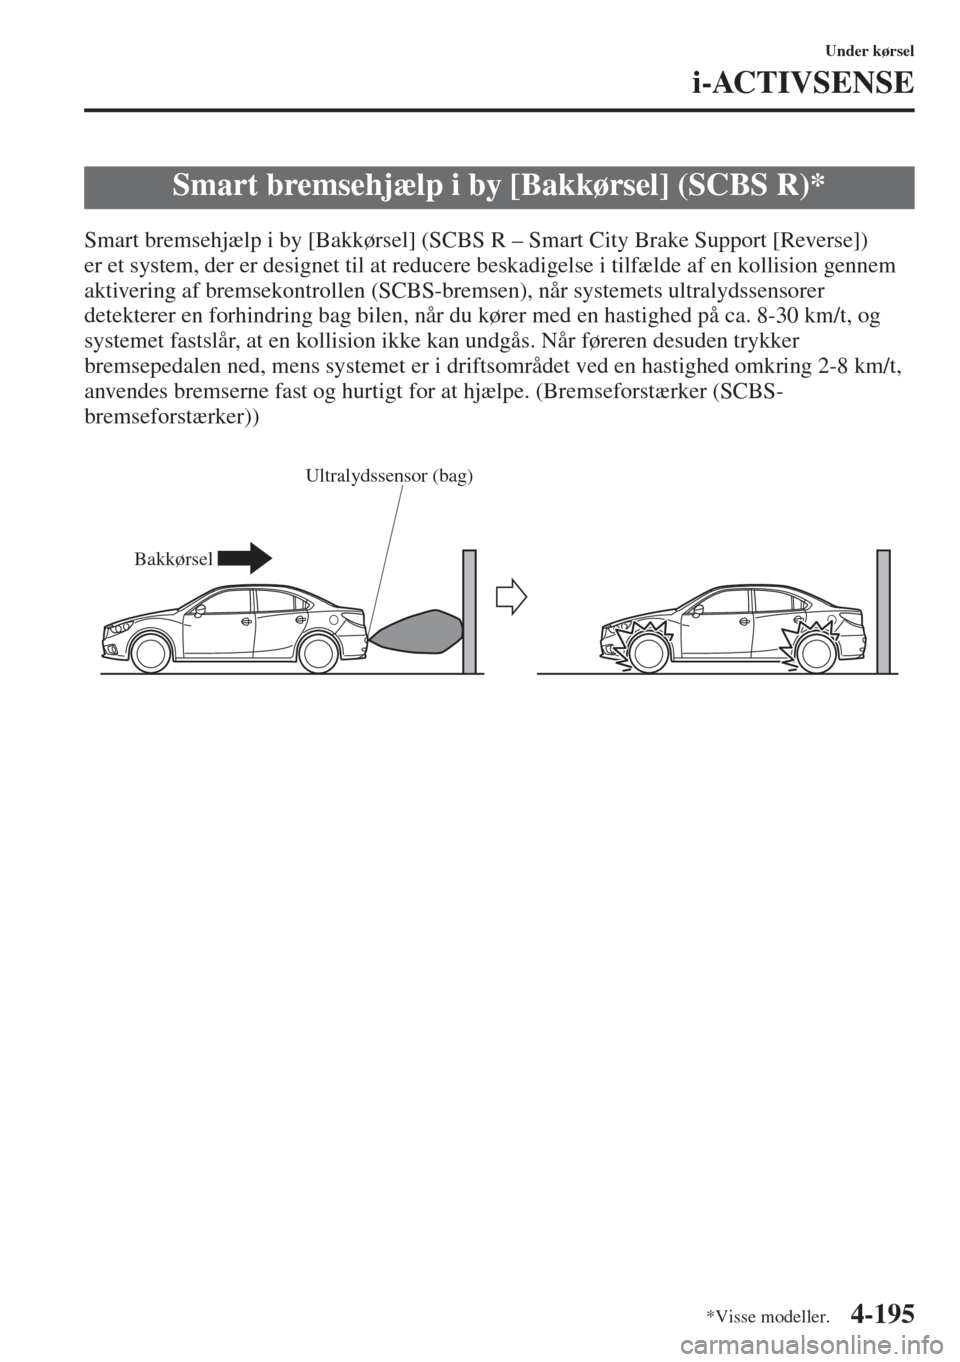 MAZDA MODEL 6 2015  Instruktionsbog (in Danish) 4-195
Under kørsel
i-ACTIVSENSE
Smart bremsehjælp i by [Bakkørsel] (SCBS R – Smart City Brake Support [Reverse]) 
er et system, der er designet til at reducere beskadigelse i tilfælde af en koll